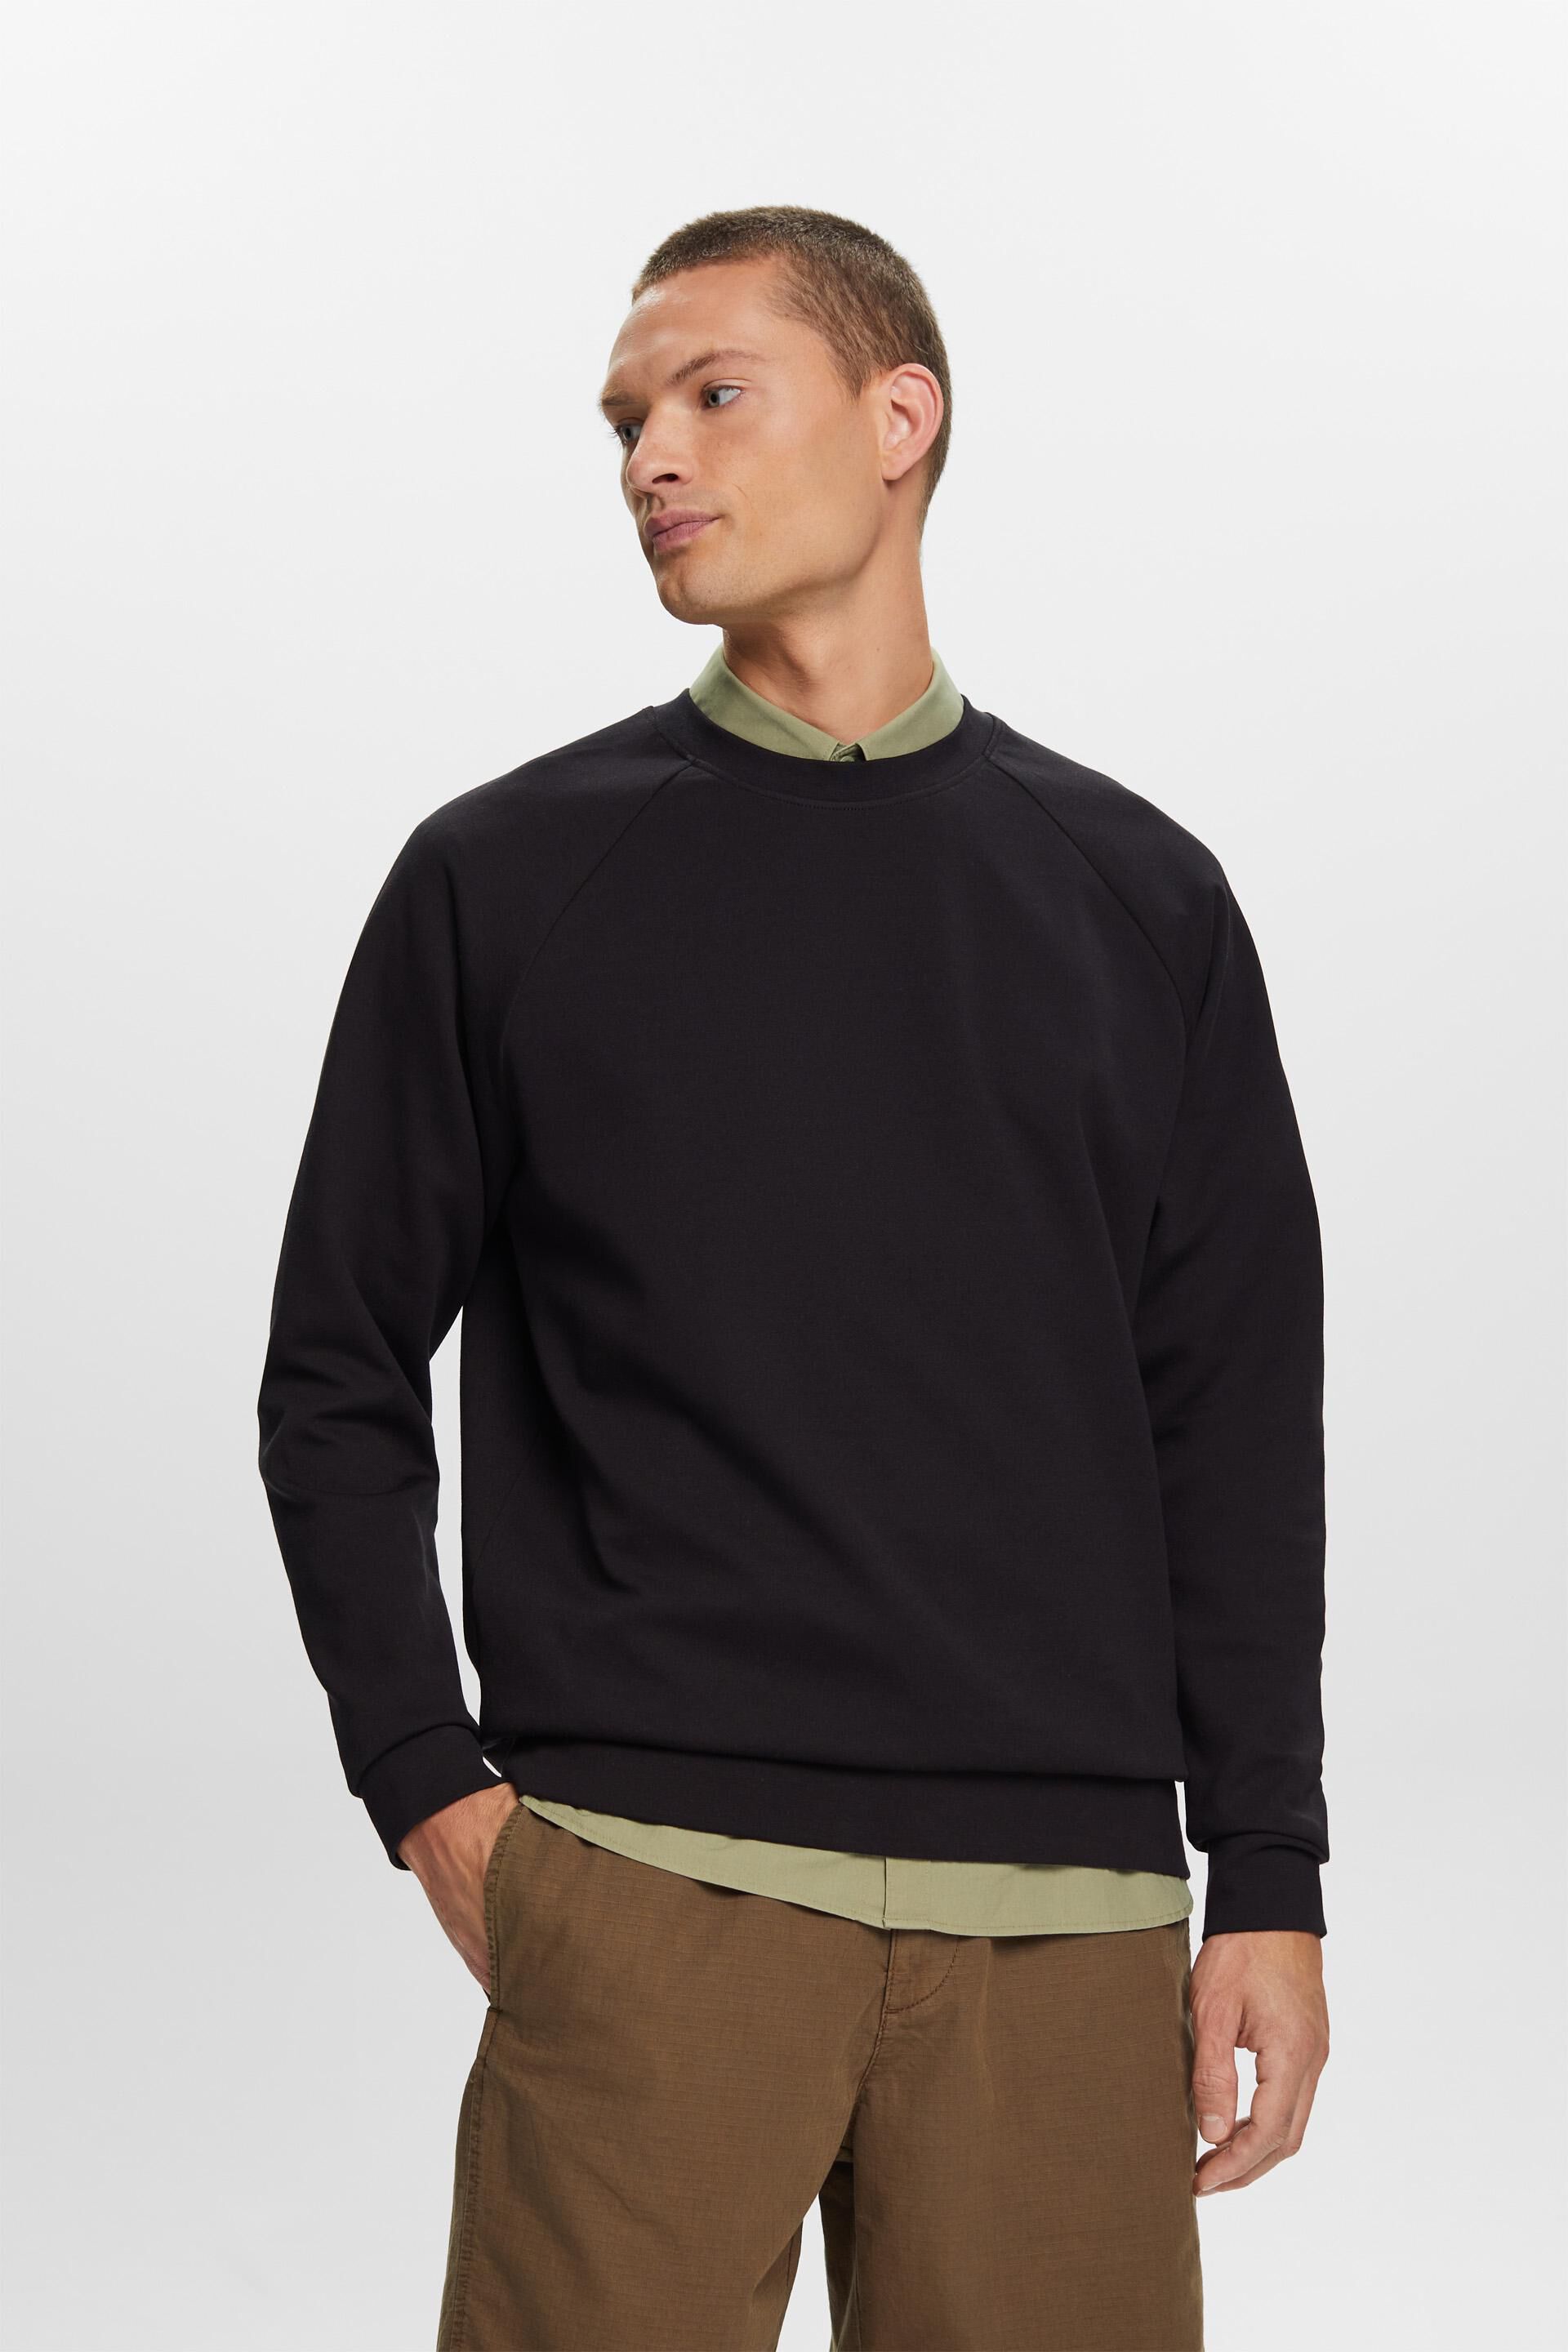 Esprit cotton Basic blend sweatshirt,